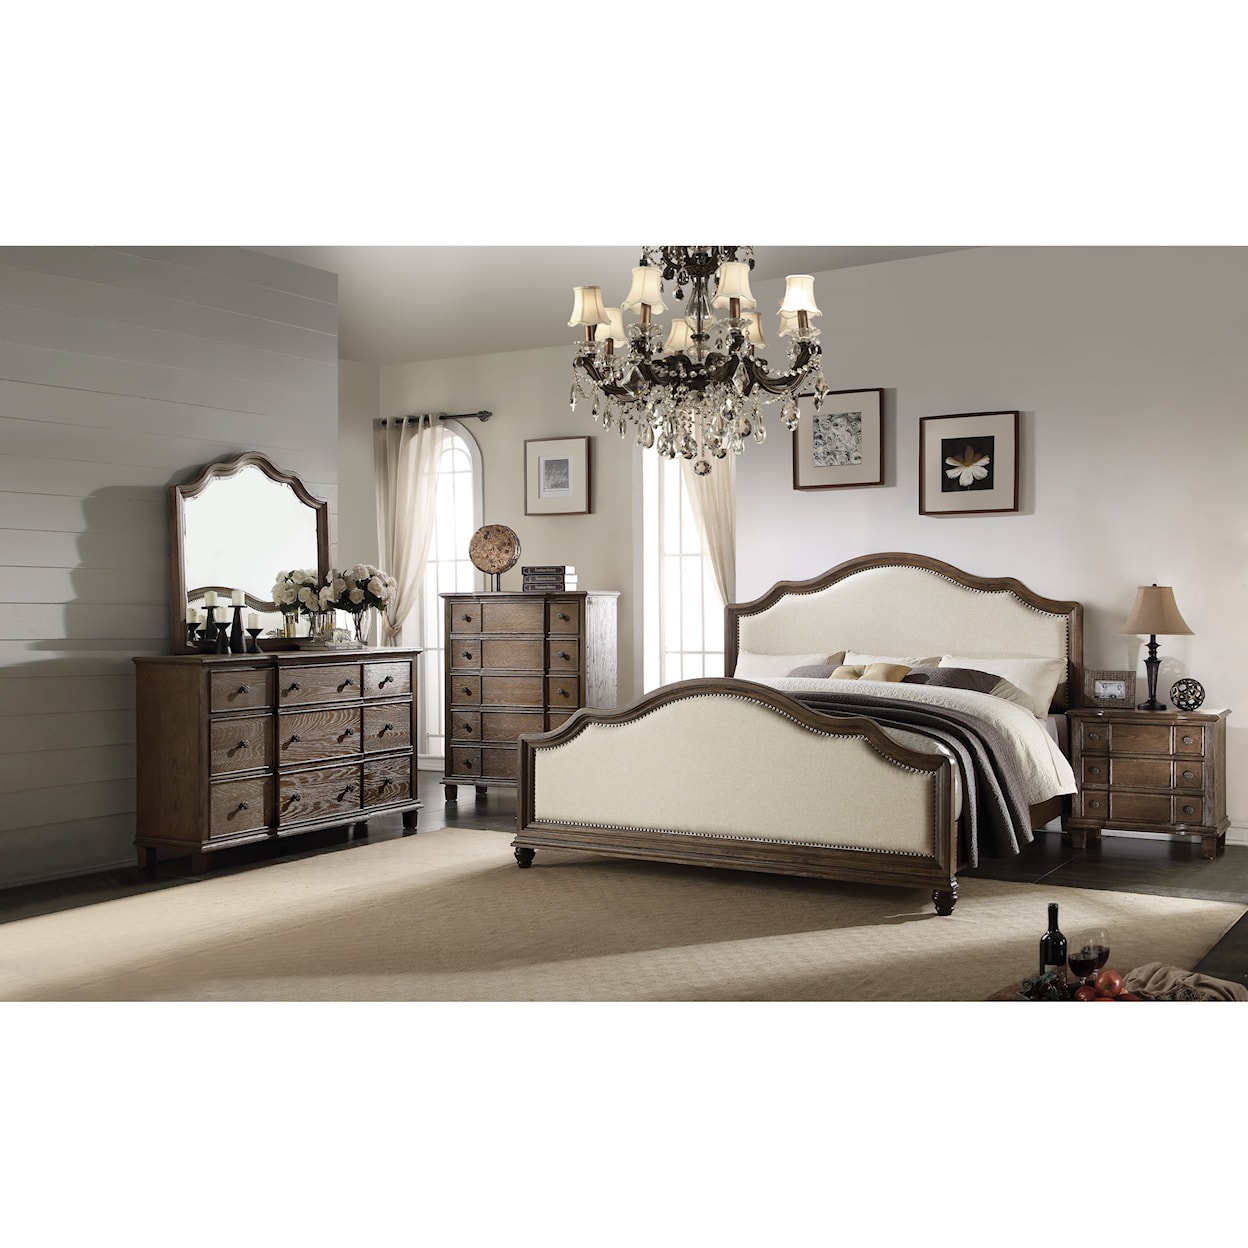 Acme Furniture Baudouin 7pc Queen Bedroom Group